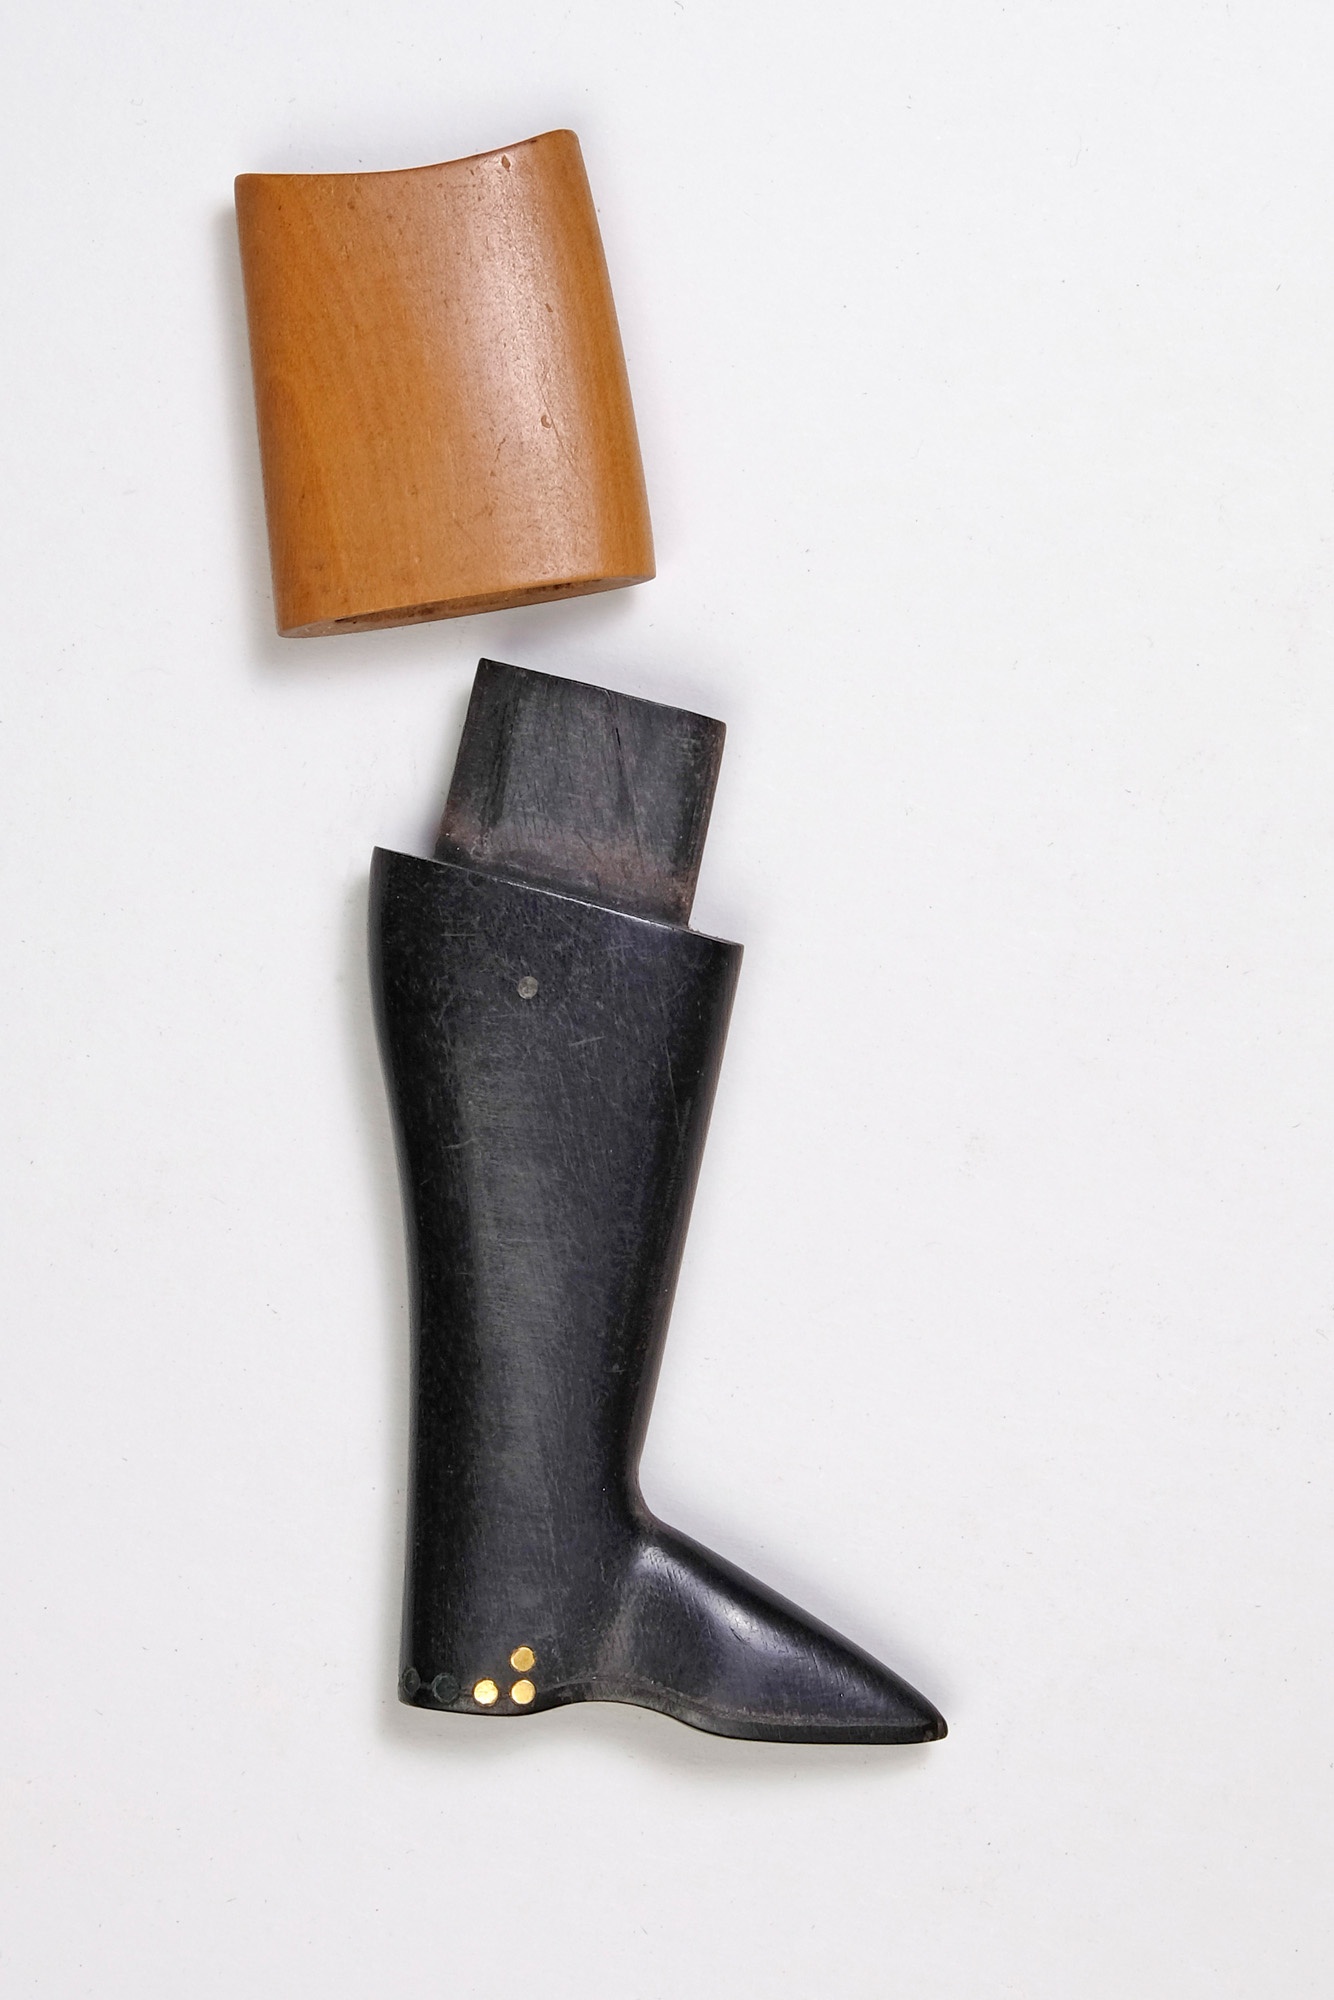 Nadel-Aufbewahrung in Form eine Zierstiefels, Futteral (Wegemuseum CC BY-SA)